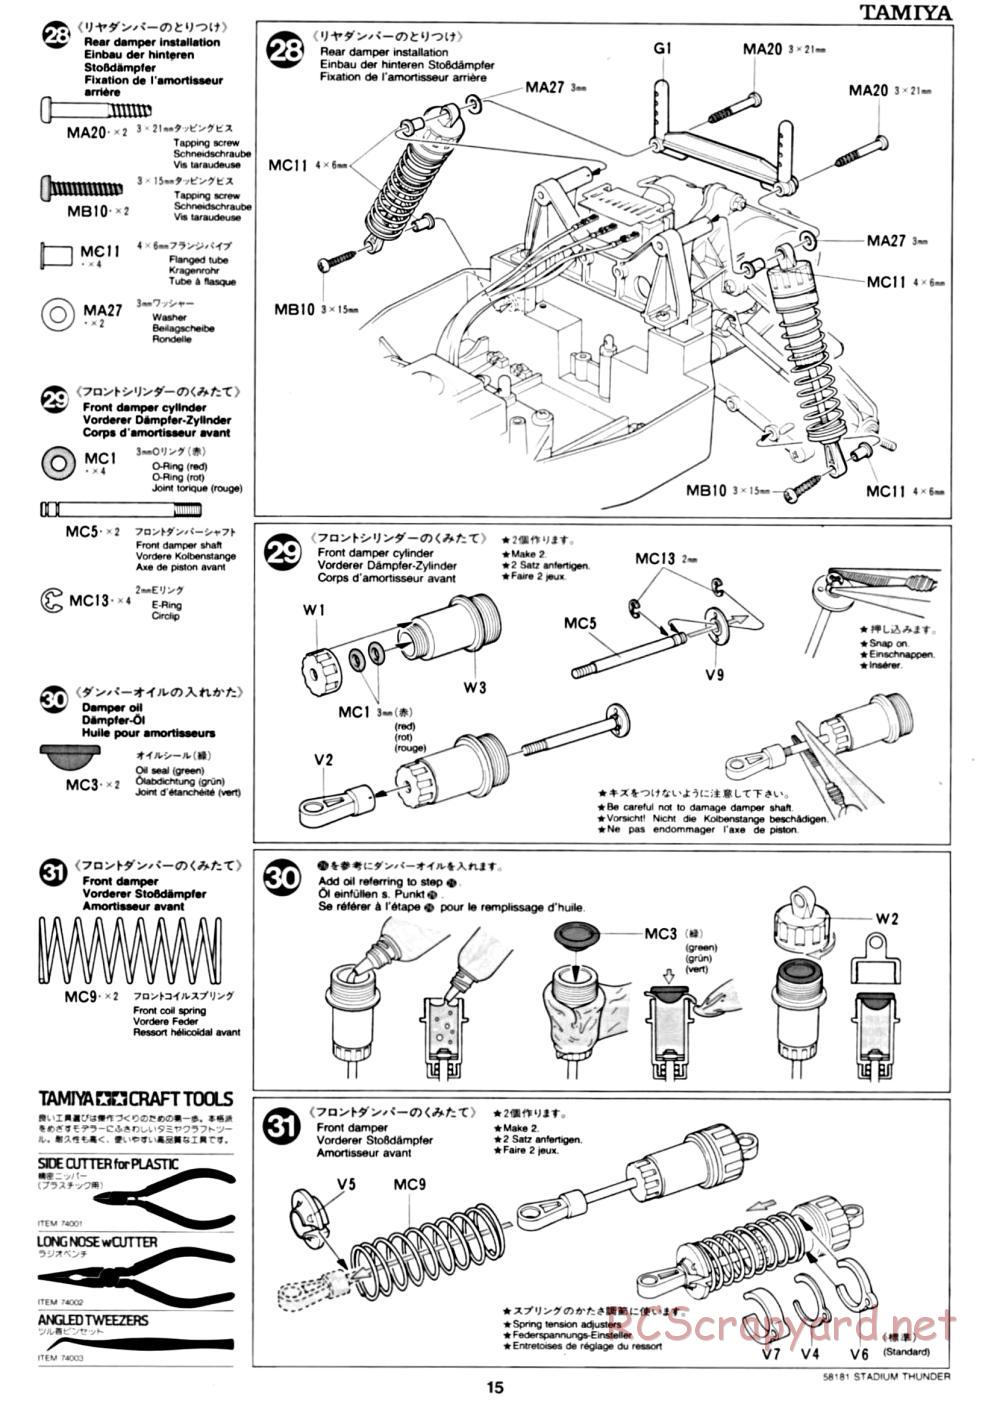 Tamiya - Stadium Thunder Chassis - Manual - Page 15